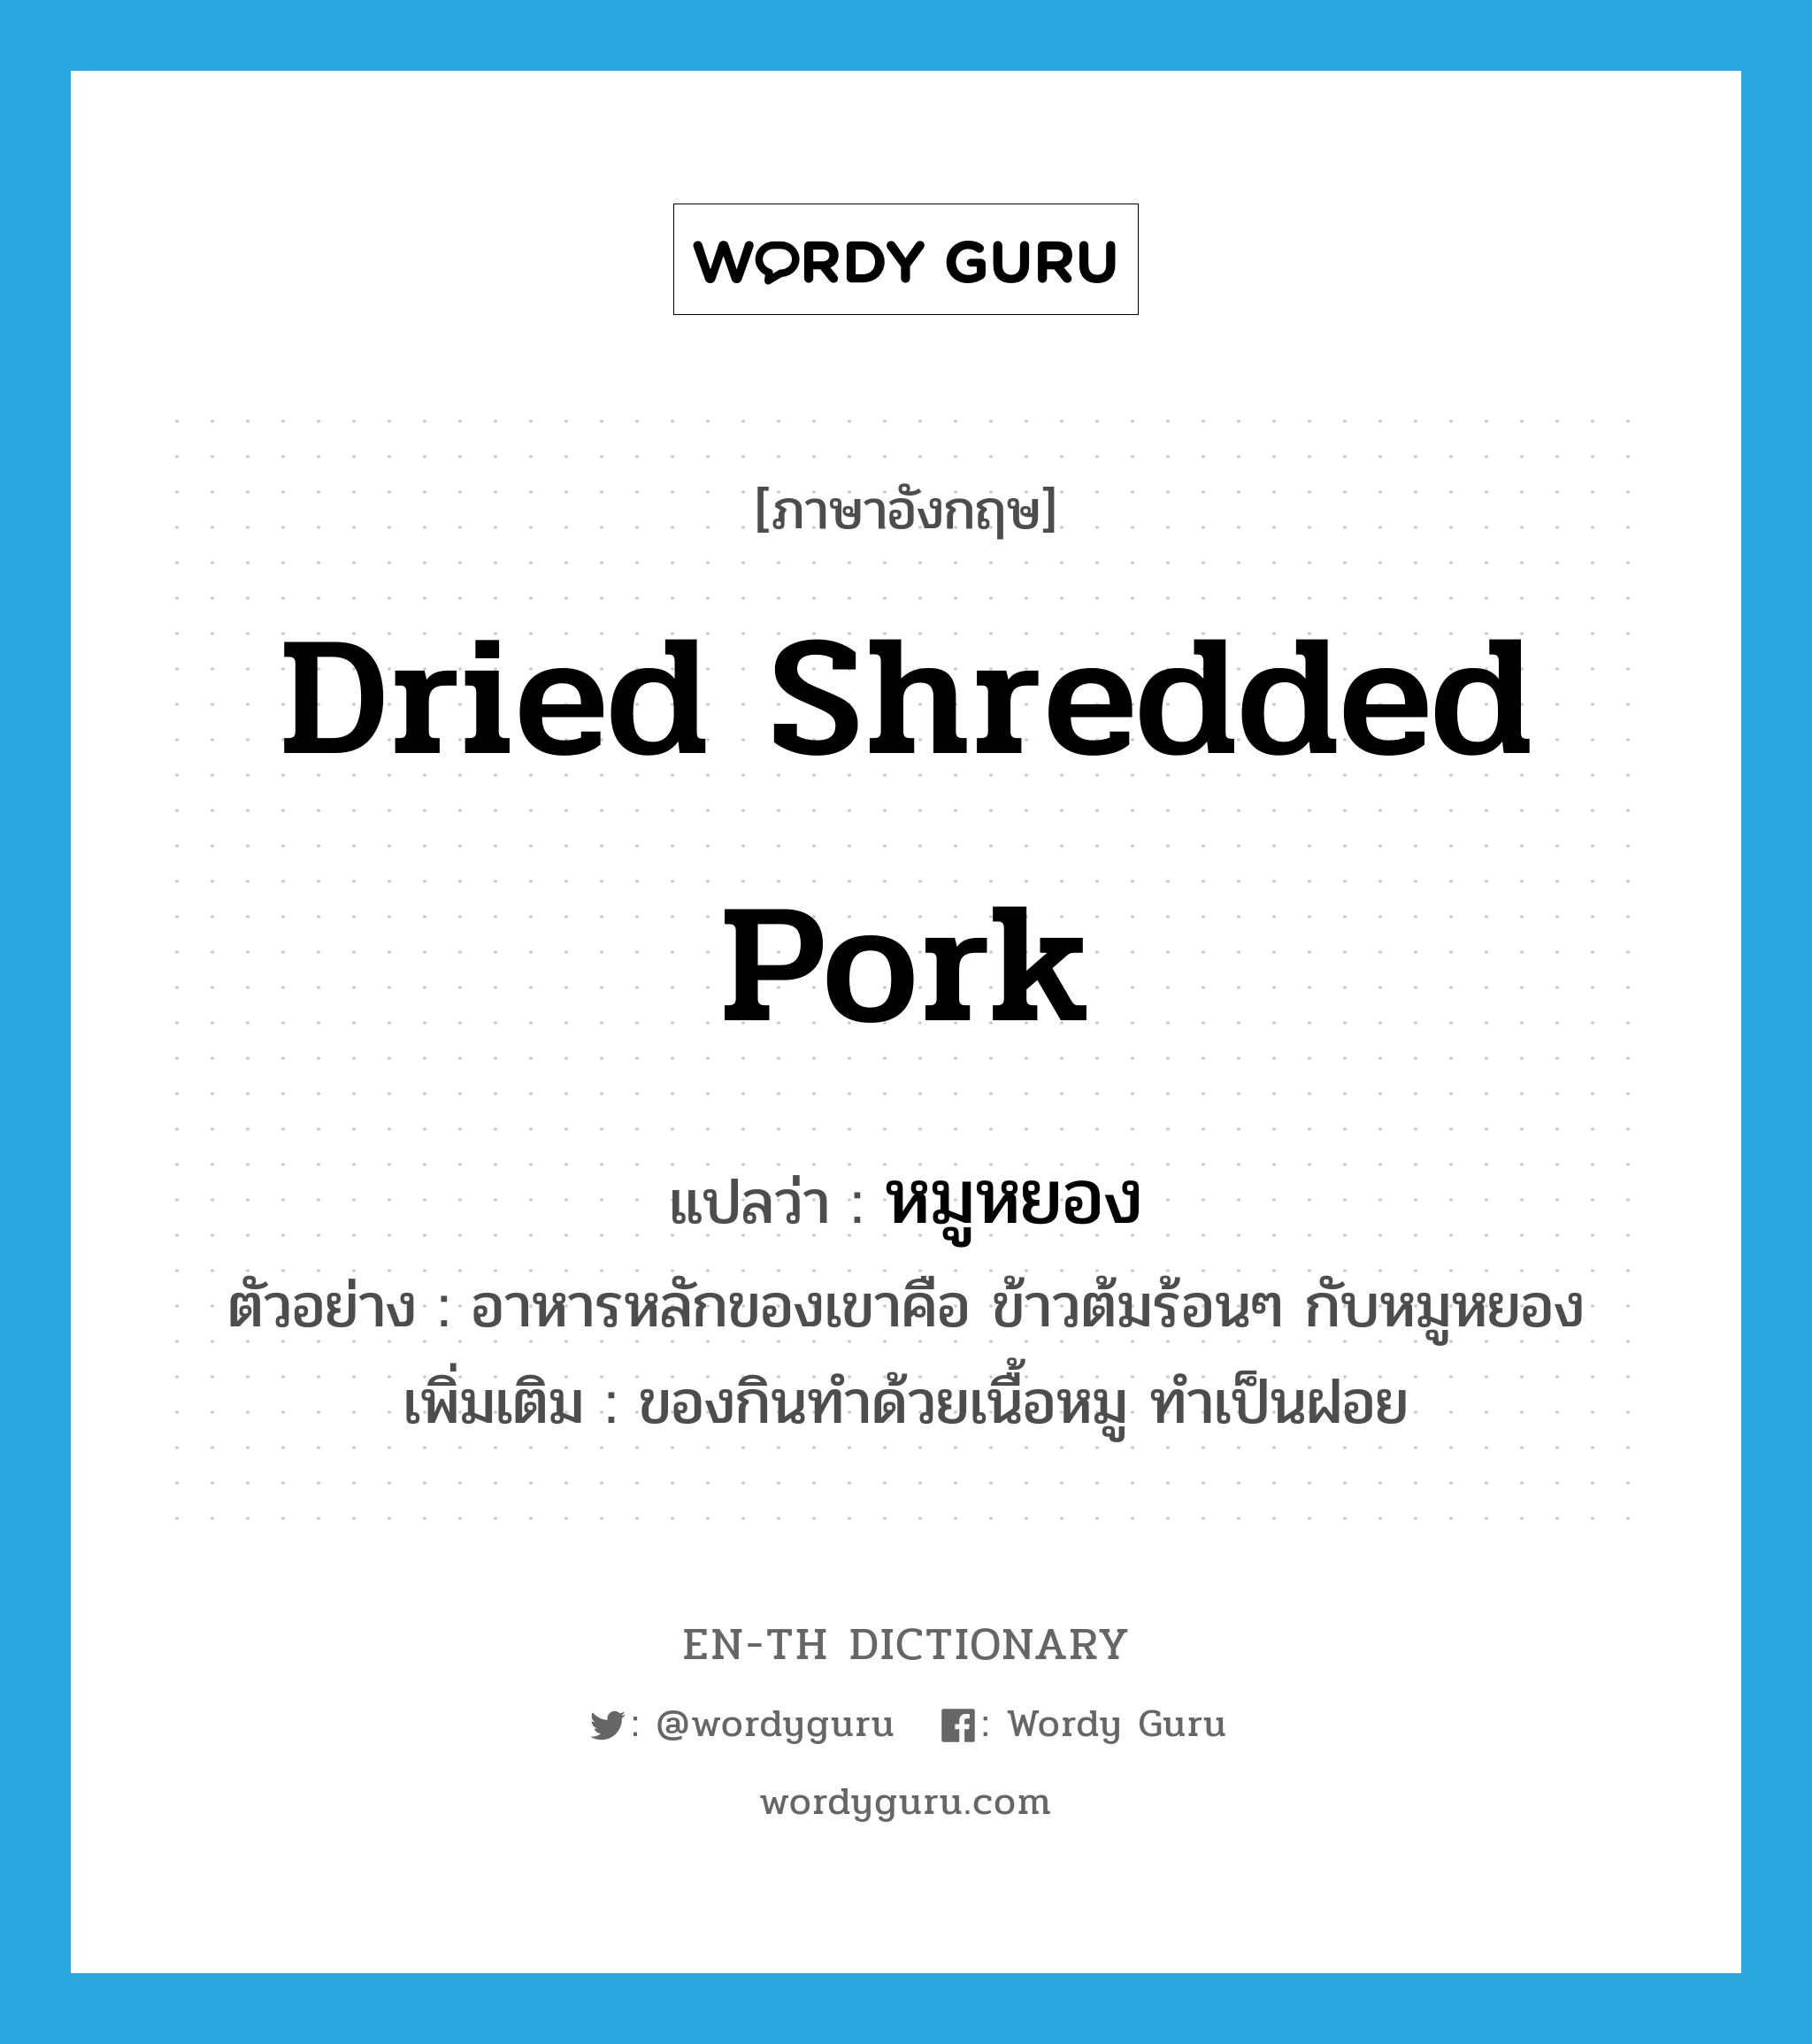 หมูหยอง ภาษาอังกฤษ?, คำศัพท์ภาษาอังกฤษ หมูหยอง แปลว่า dried shredded pork ประเภท N ตัวอย่าง อาหารหลักของเขาคือ ข้าวต้มร้อนๆ กับหมูหยอง เพิ่มเติม ของกินทำด้วยเนื้อหมู ทำเป็นฝอย หมวด N